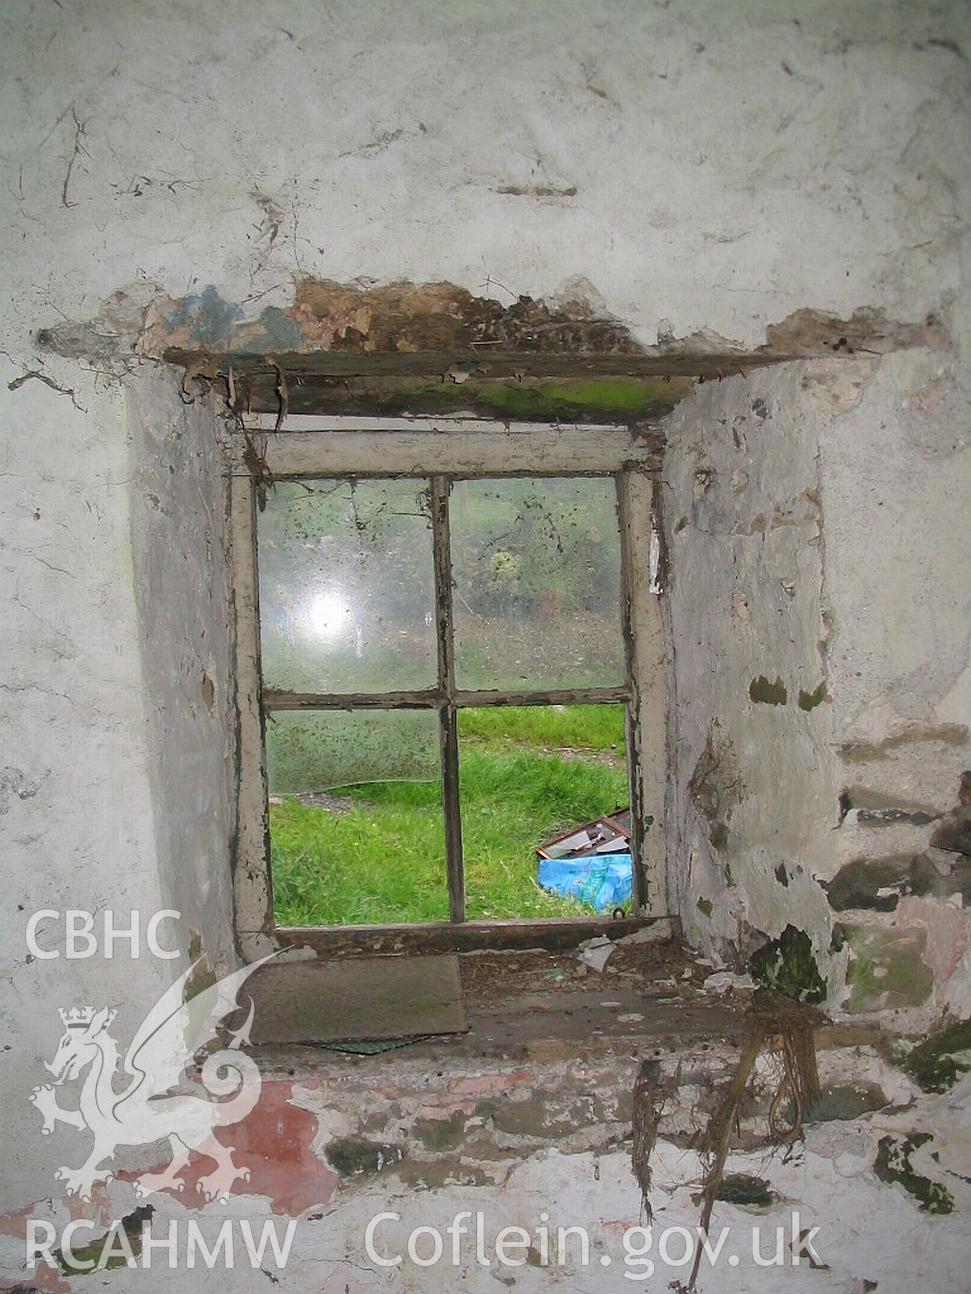 Dwelling end of Allt Ddu farmhouse, internal window detail.